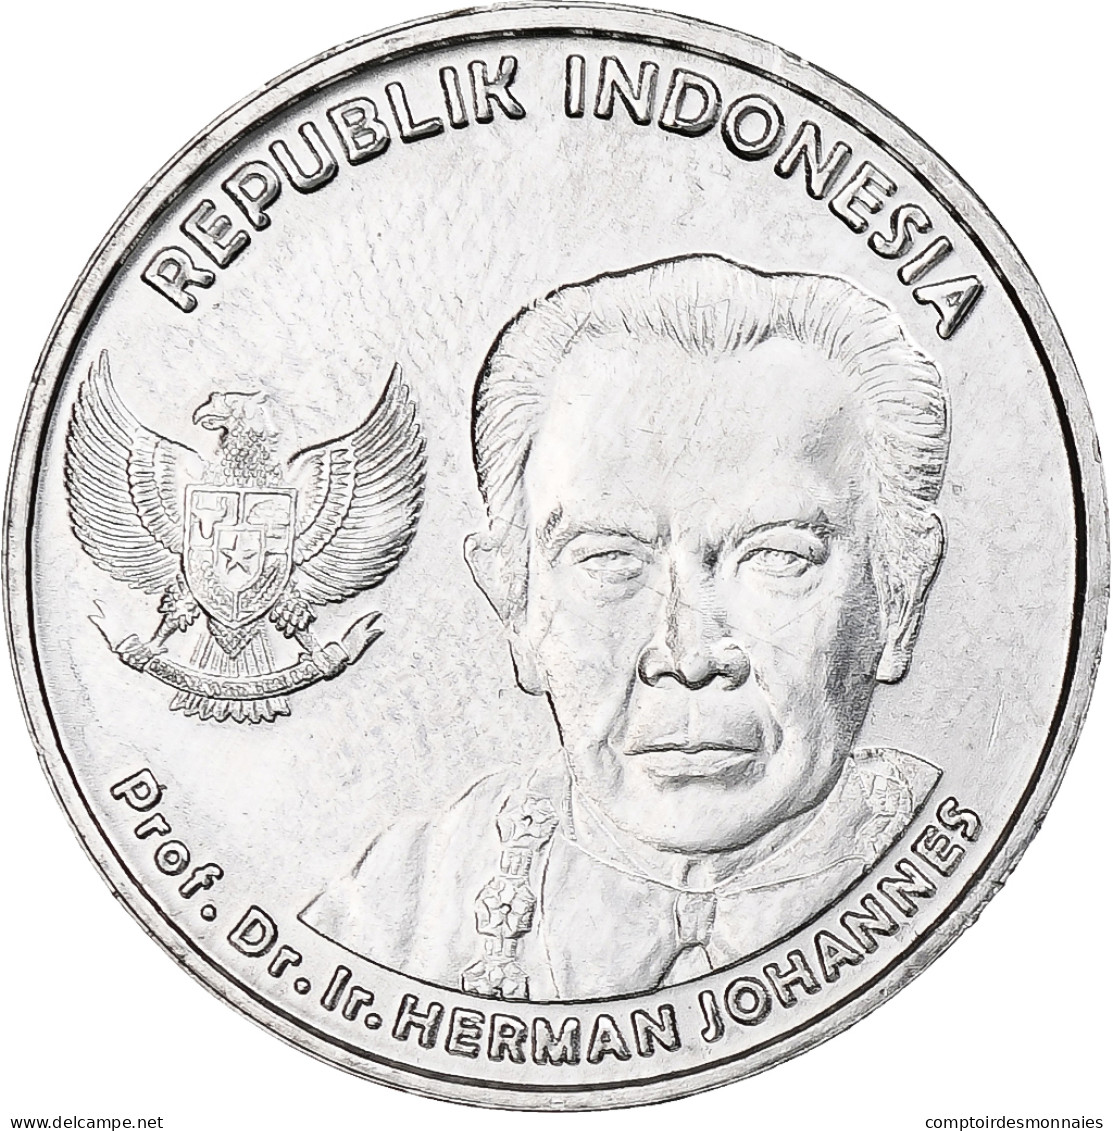 Indonésie, 100 Rupiah, 2016, Aluminium, SPL - Indonesië